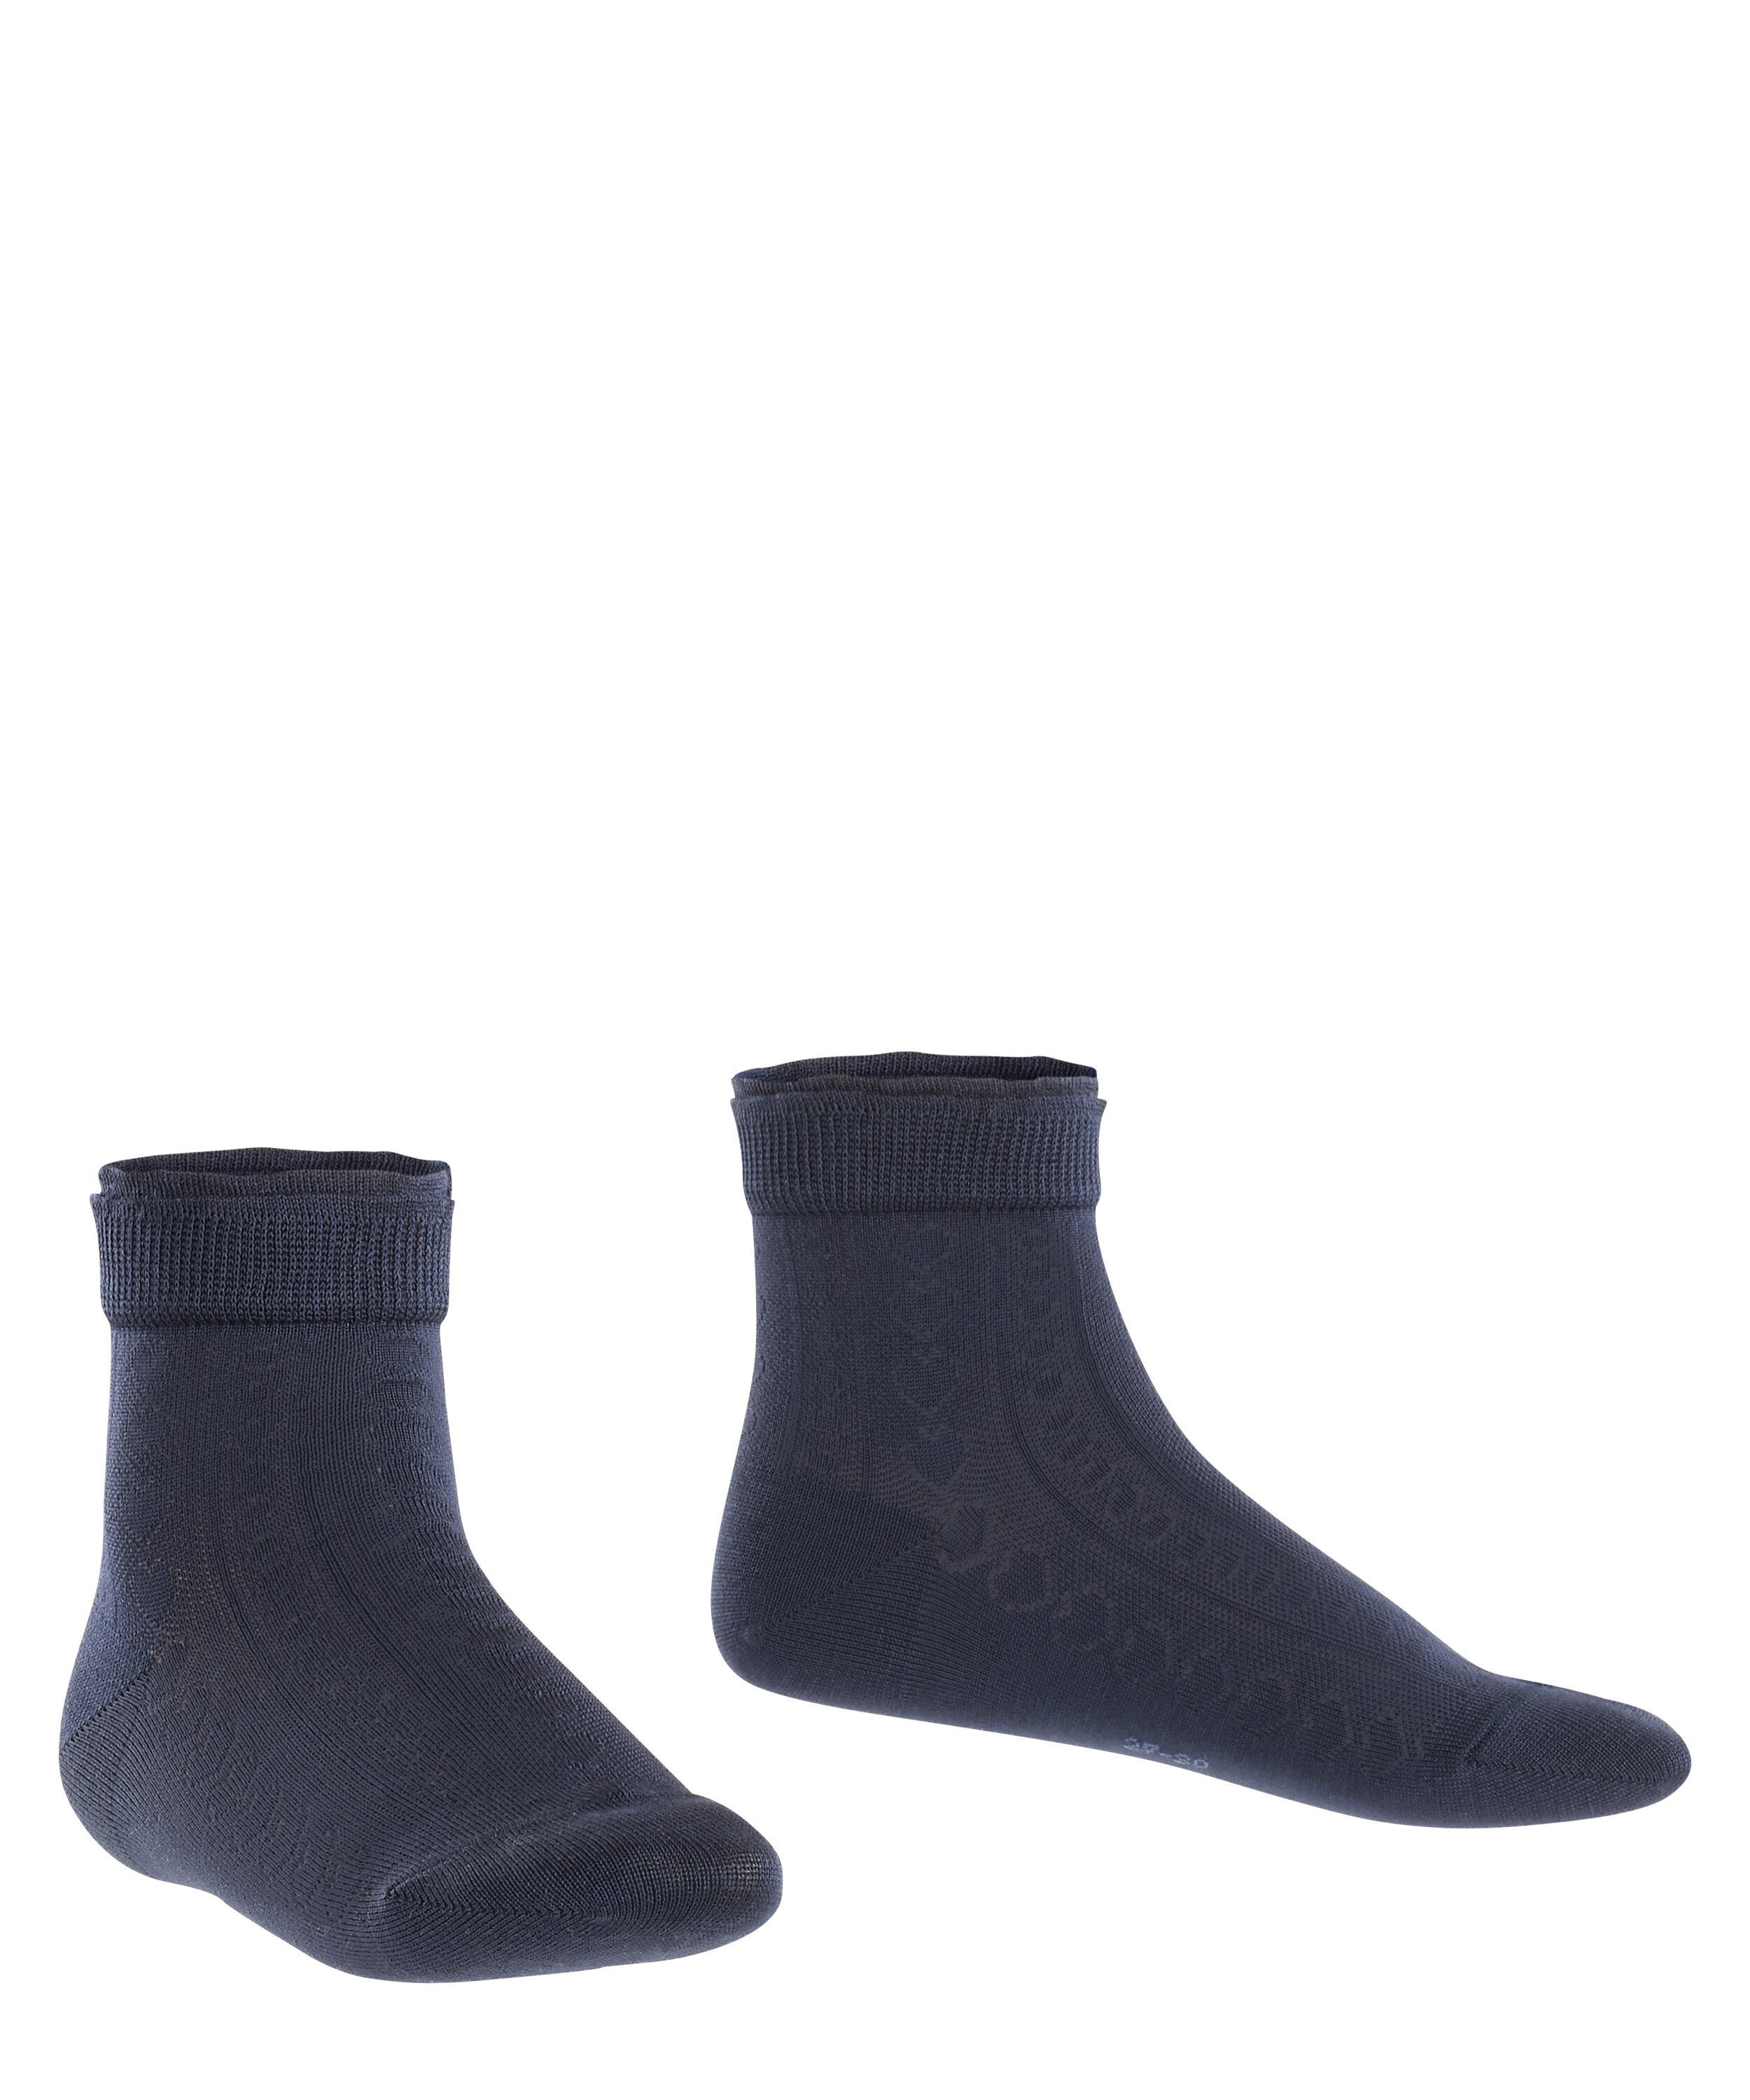 Romantic FALKE Net (6120) (1-Paar) Socken marine